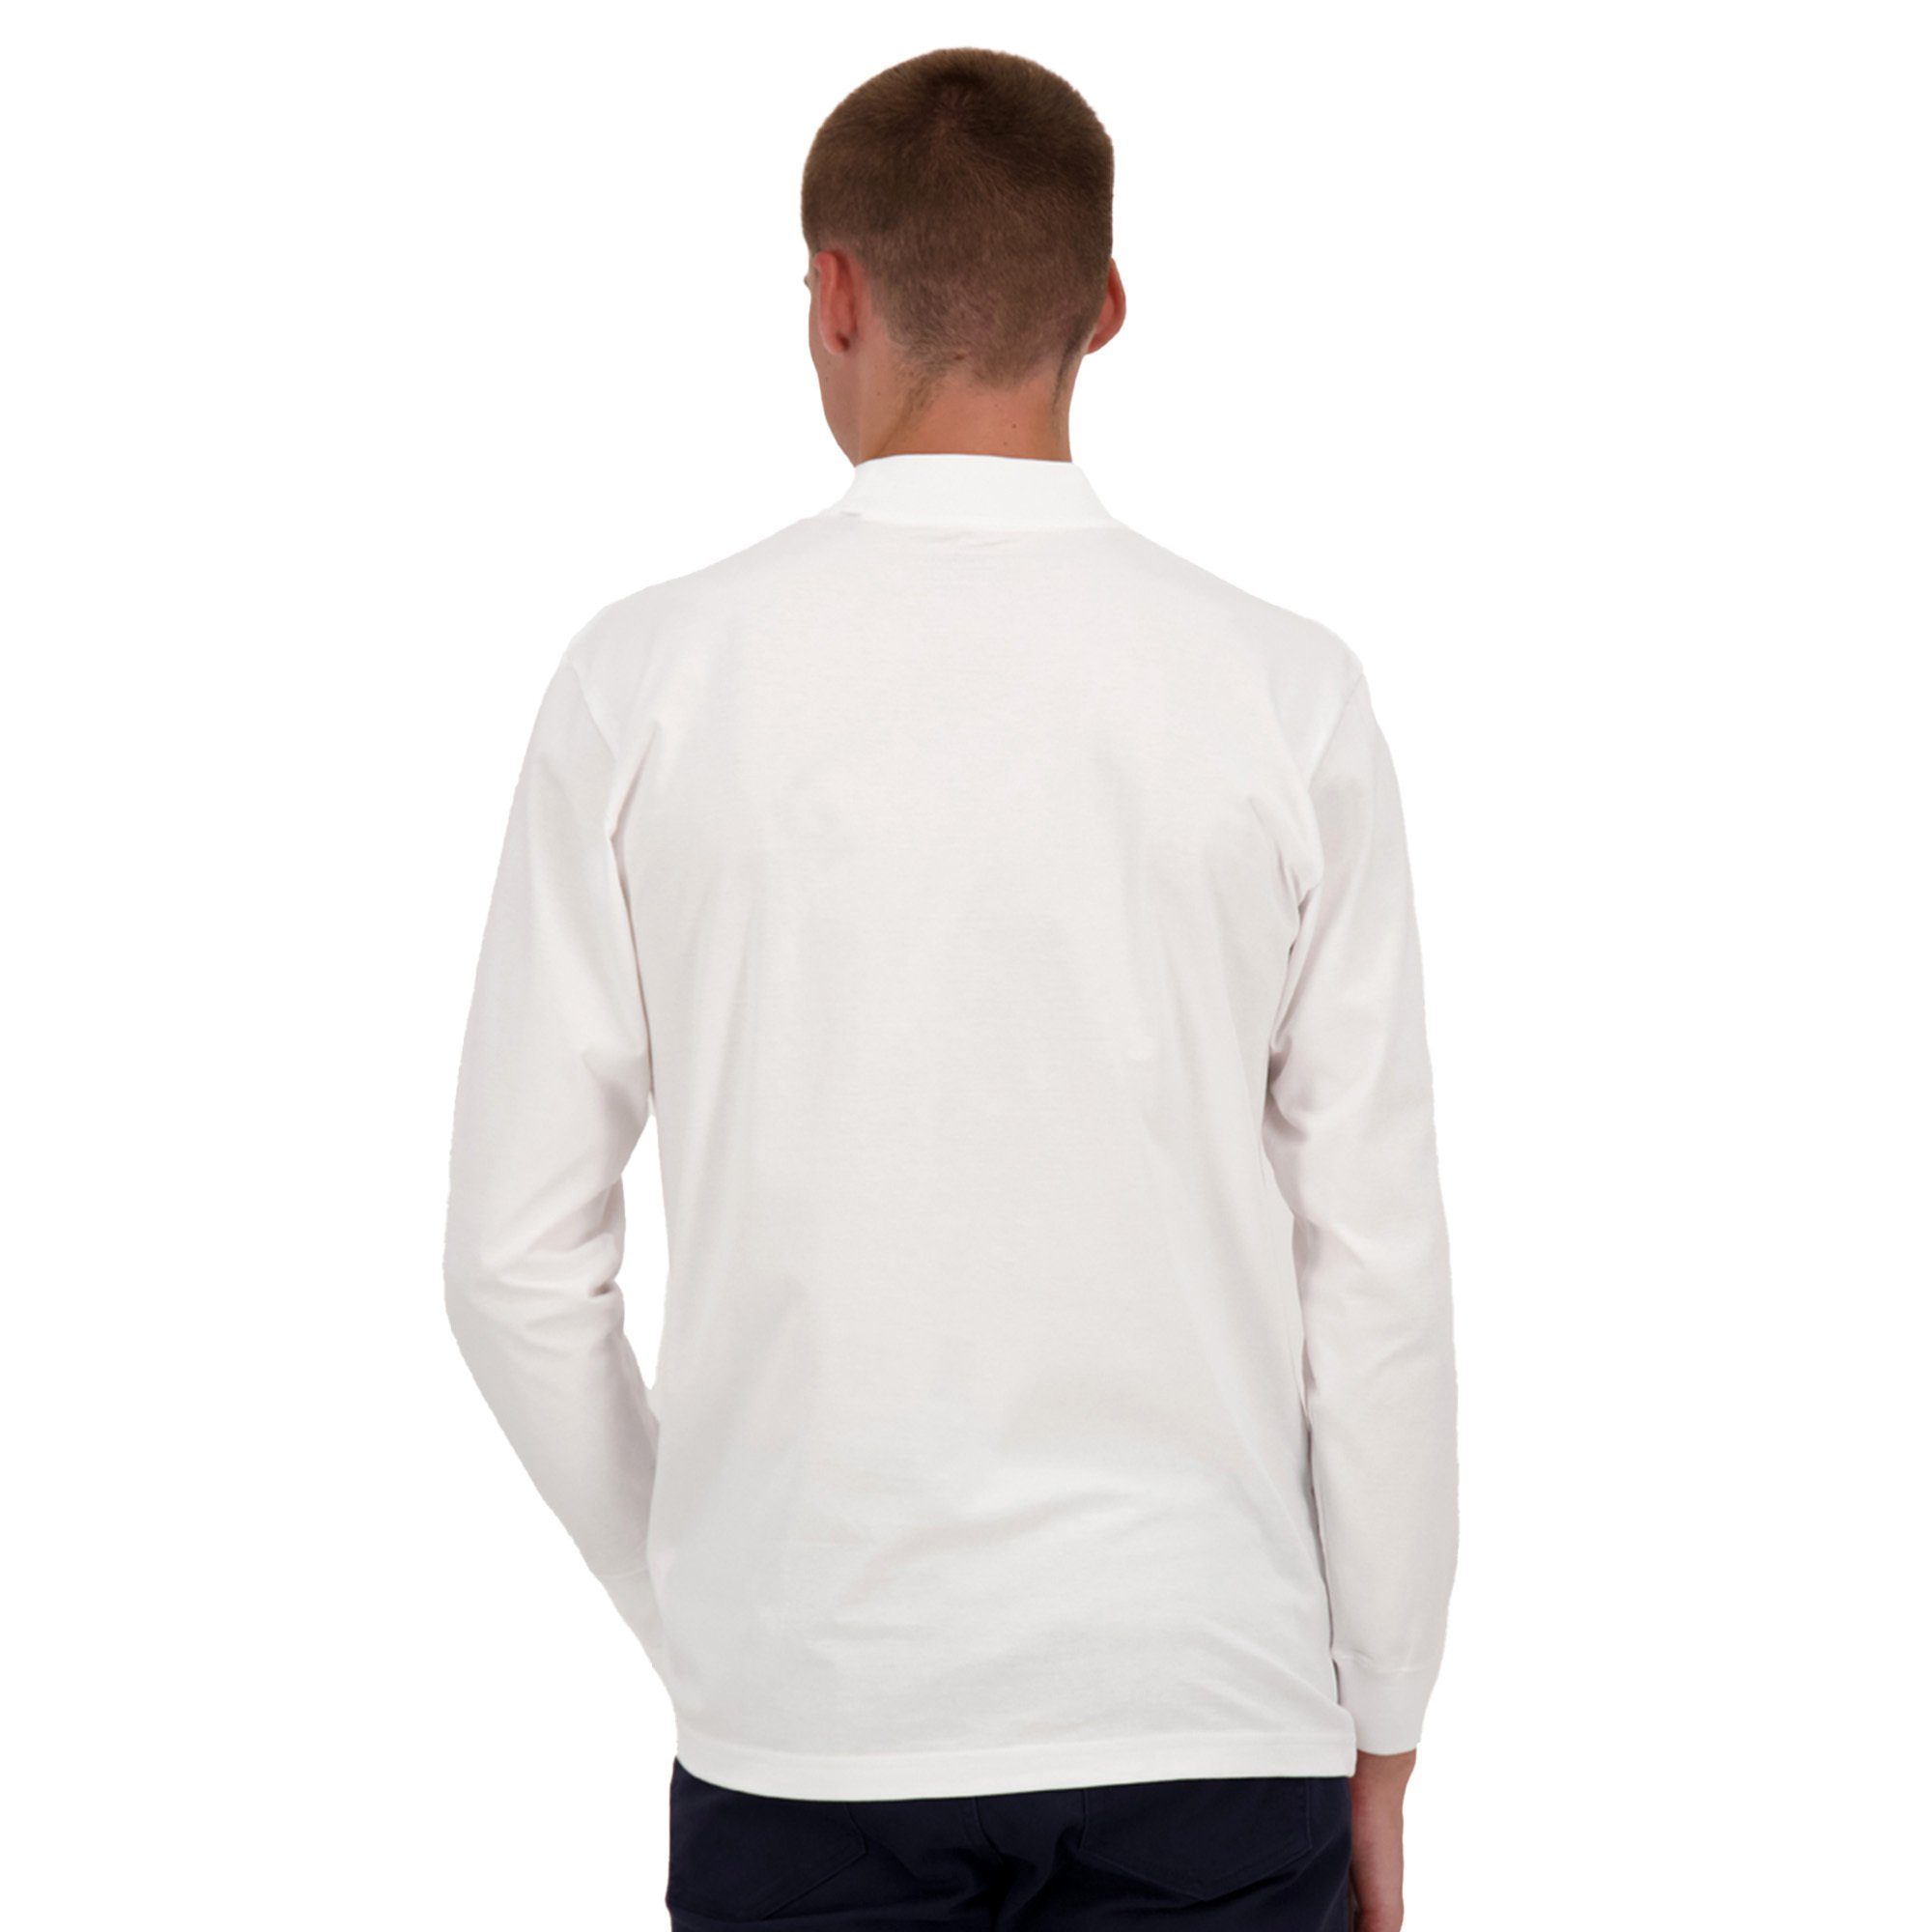 RAGMAN Sweatshirt Herren Stehkragen-Pullover - Basic Weiß Langarm